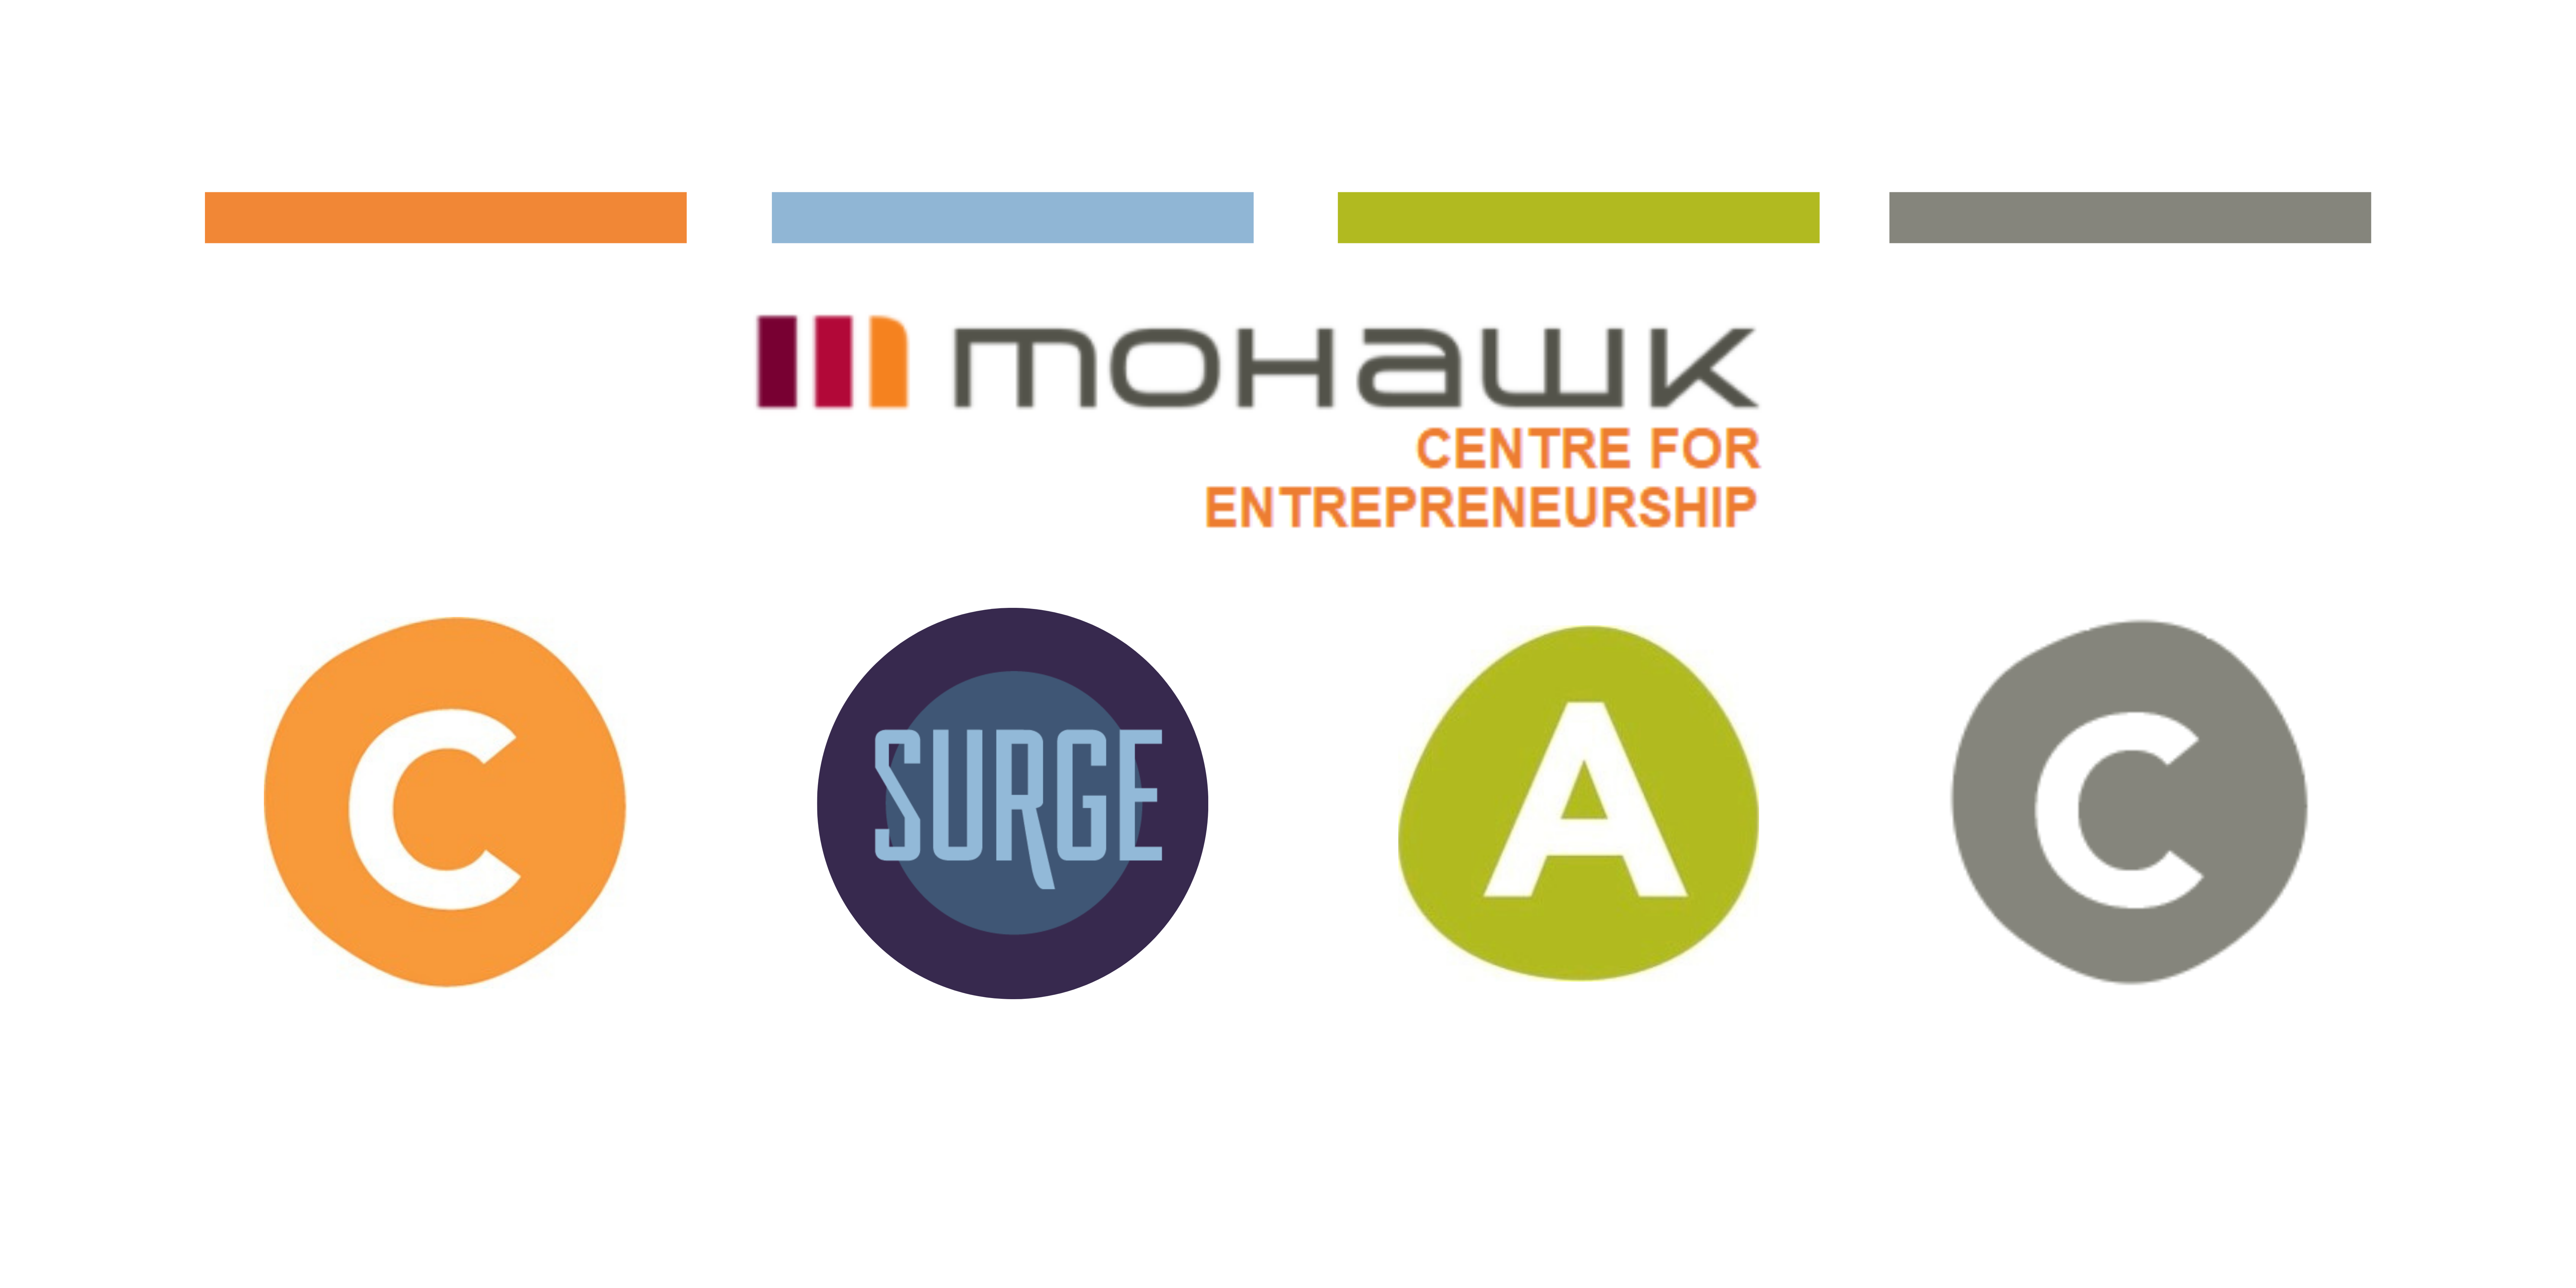 Centre for entrepreneurship logo and micro-centre logos